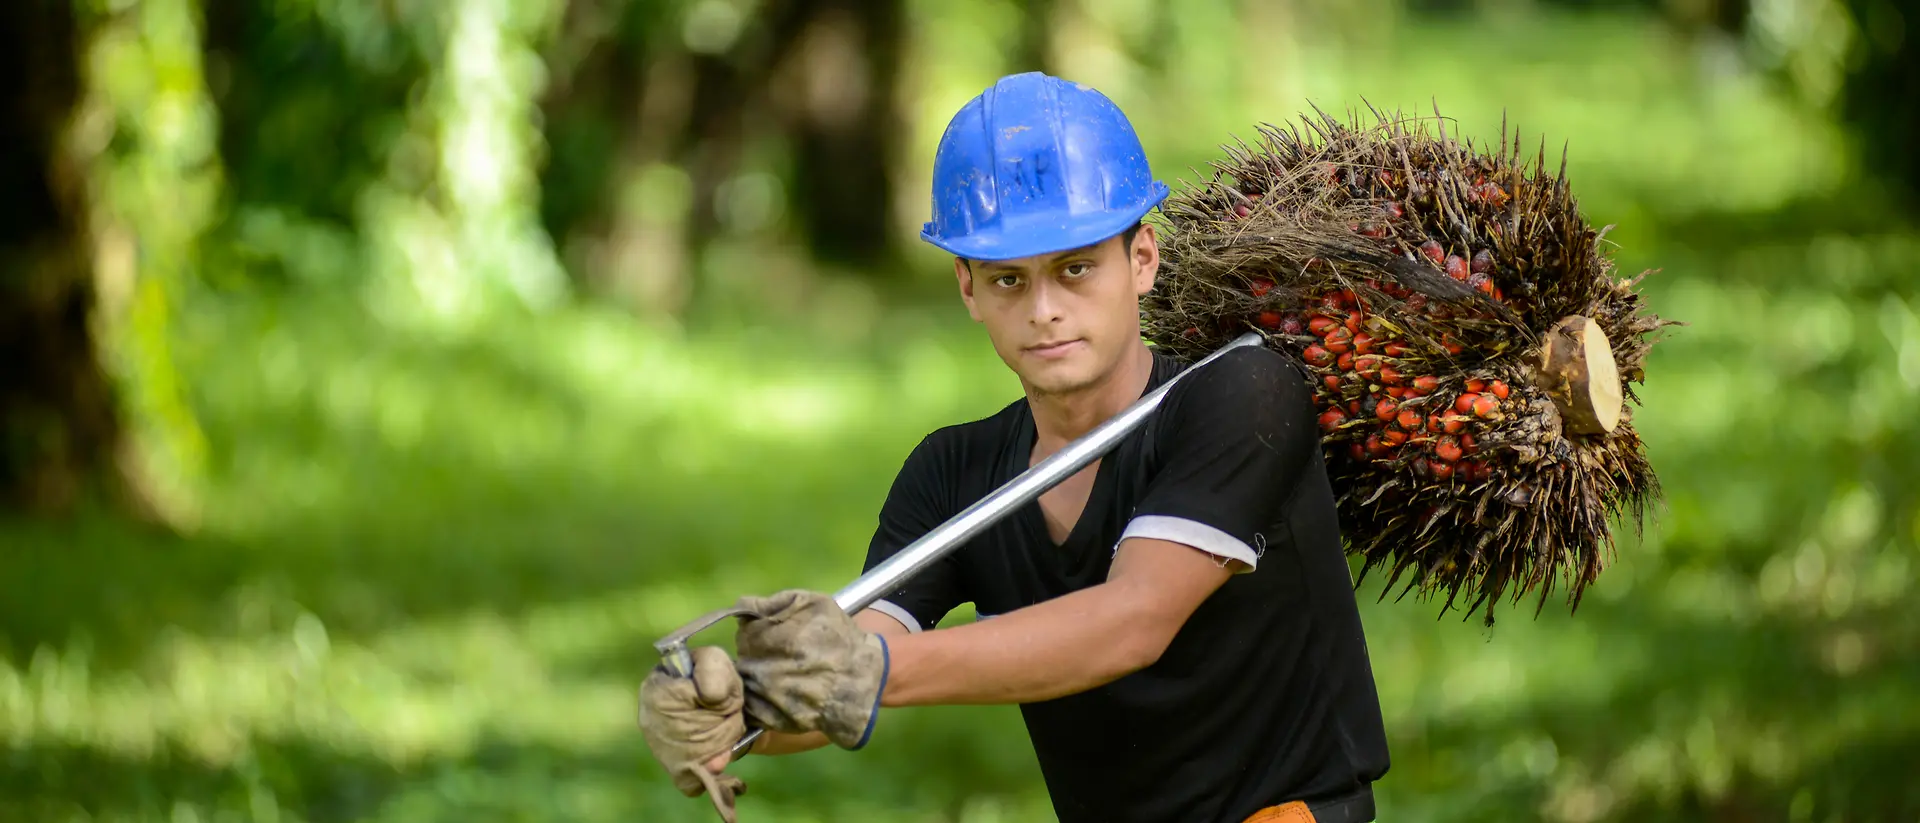 Artisant portant un casque bleu, transportant des fruits de palmier dans une plantation de palmiers